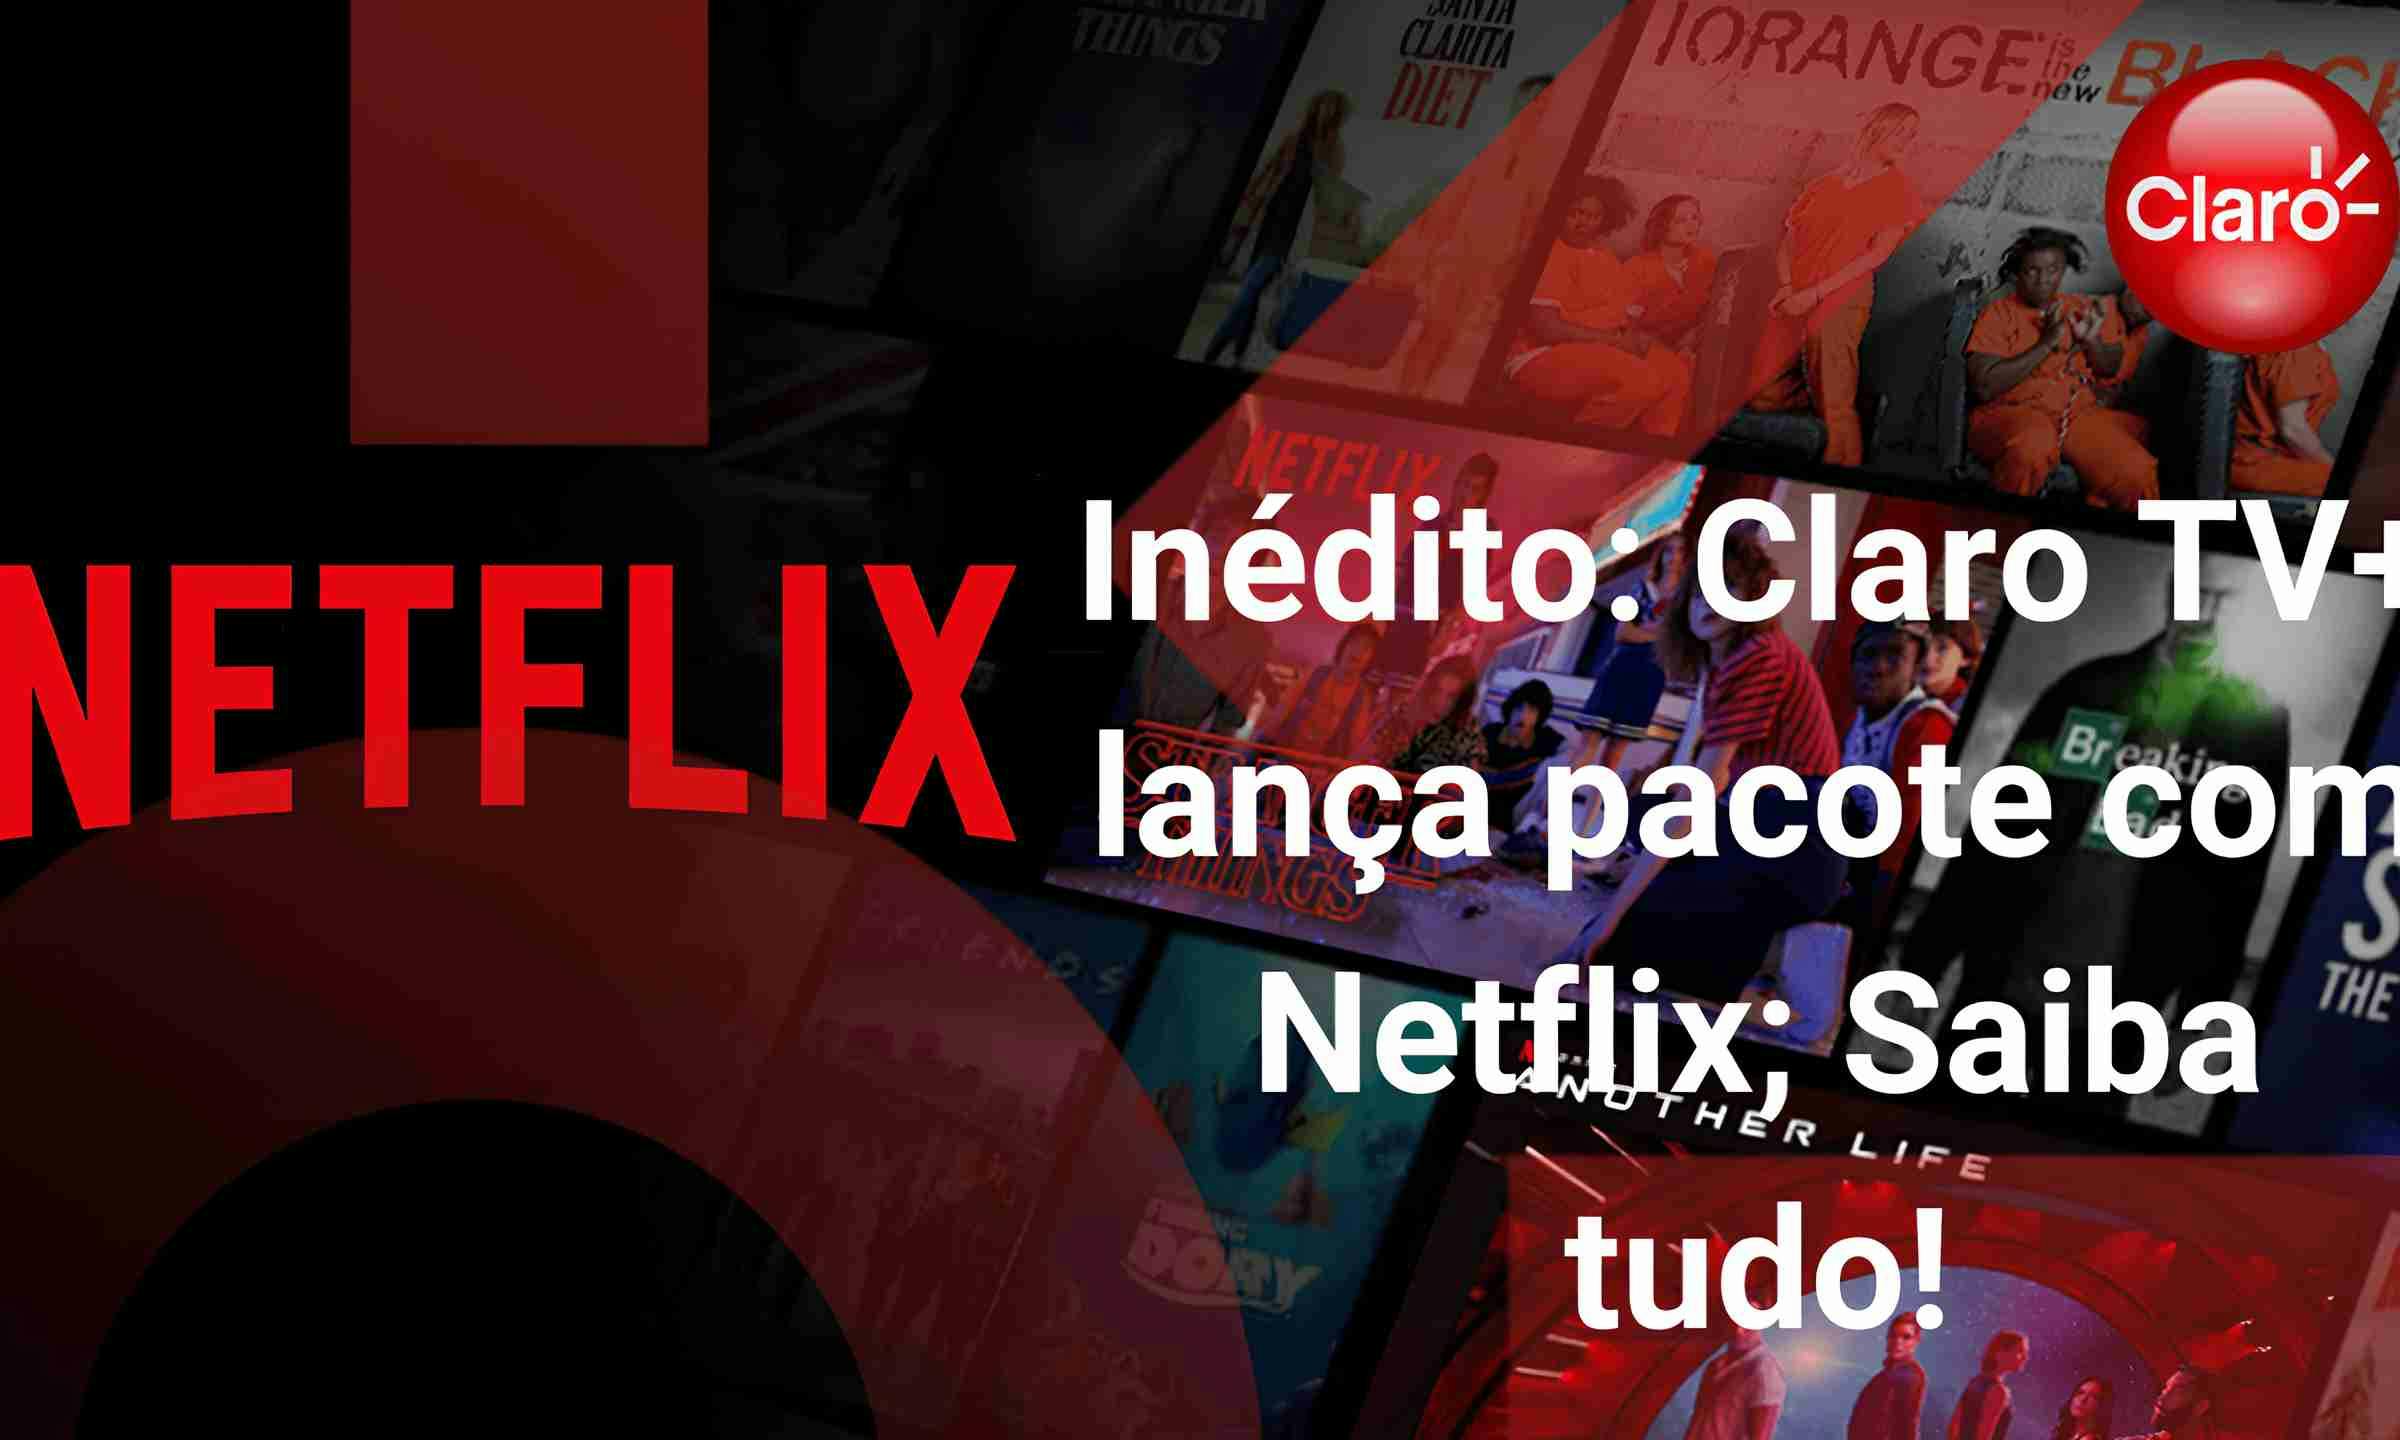 Inédito: Claro TV+ lança pacote com Netflix; Saiba tudo! 